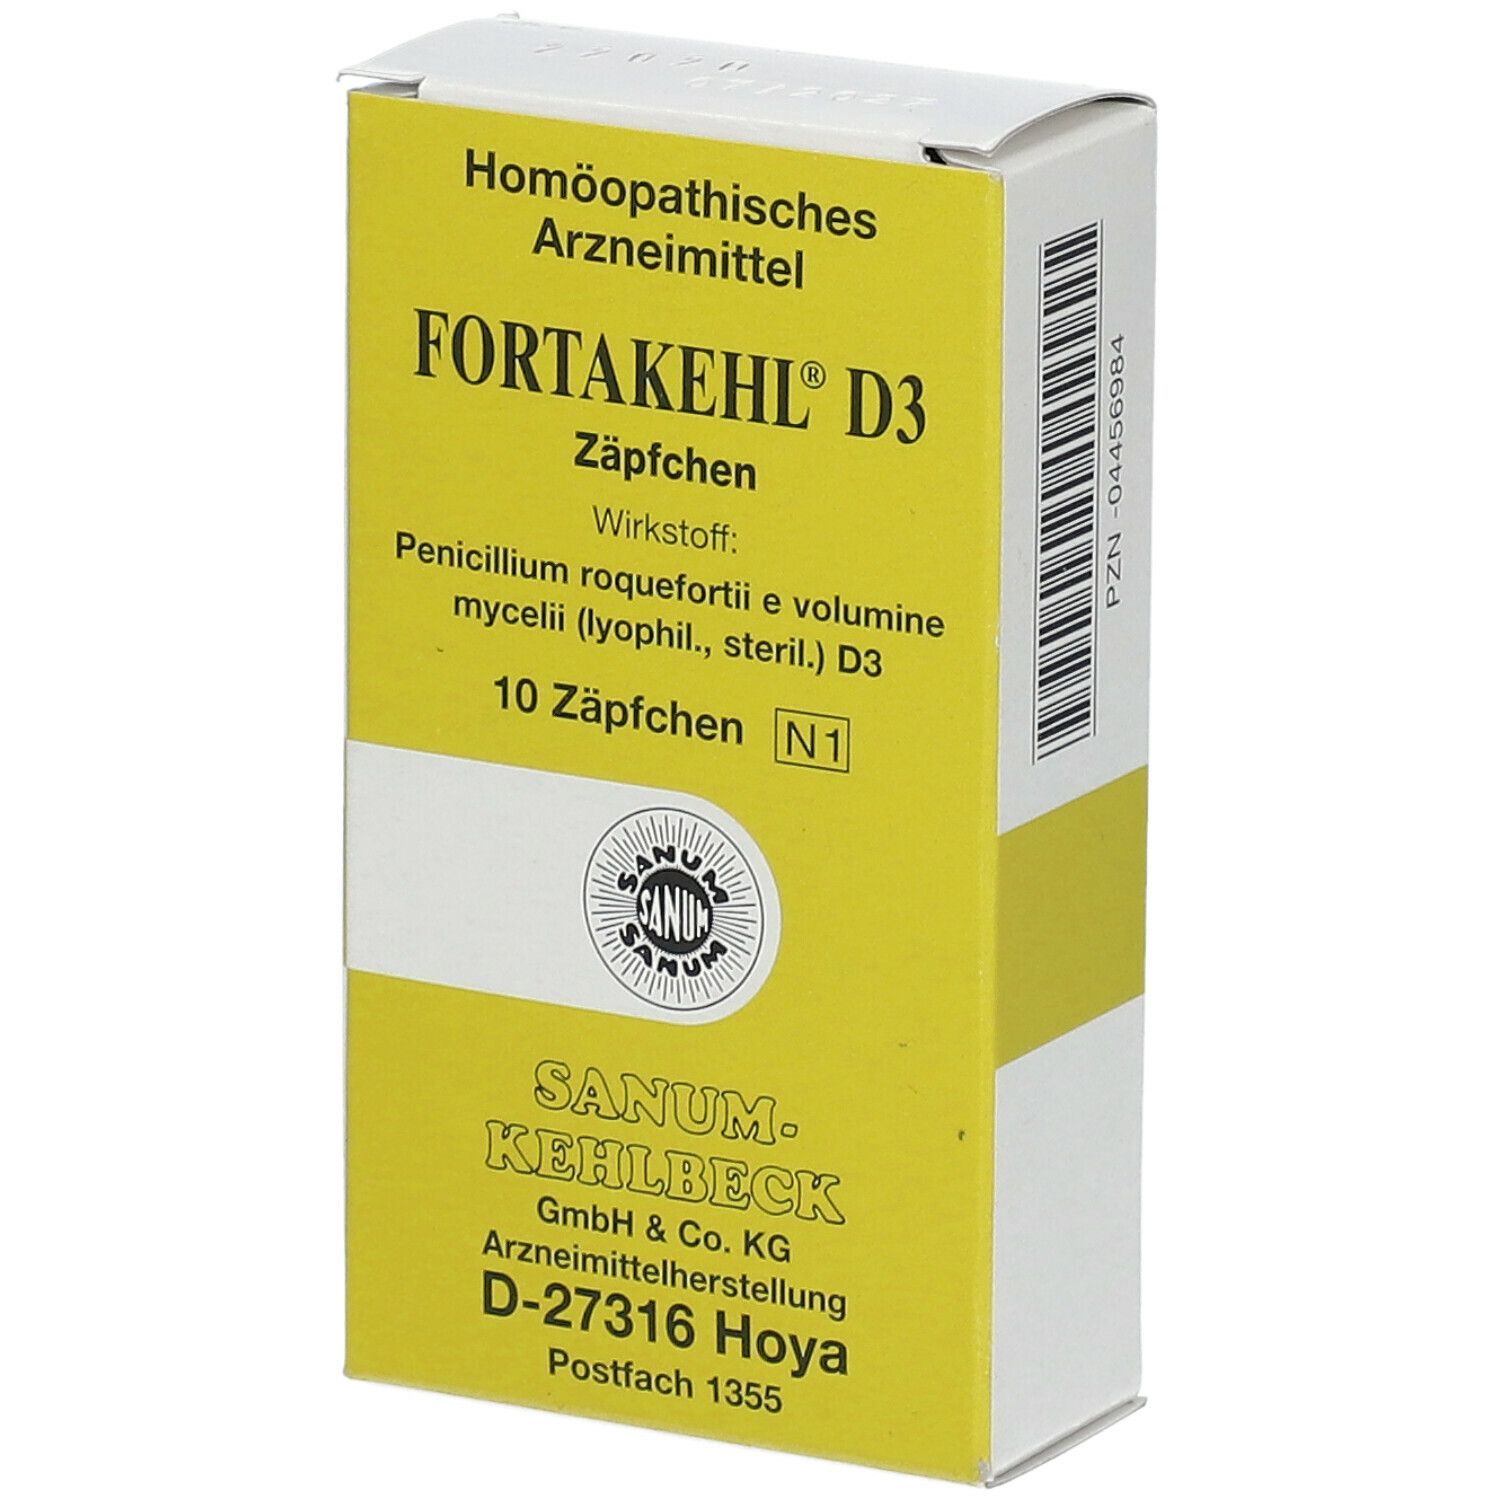 Fortakehl® D3 Suppositorien